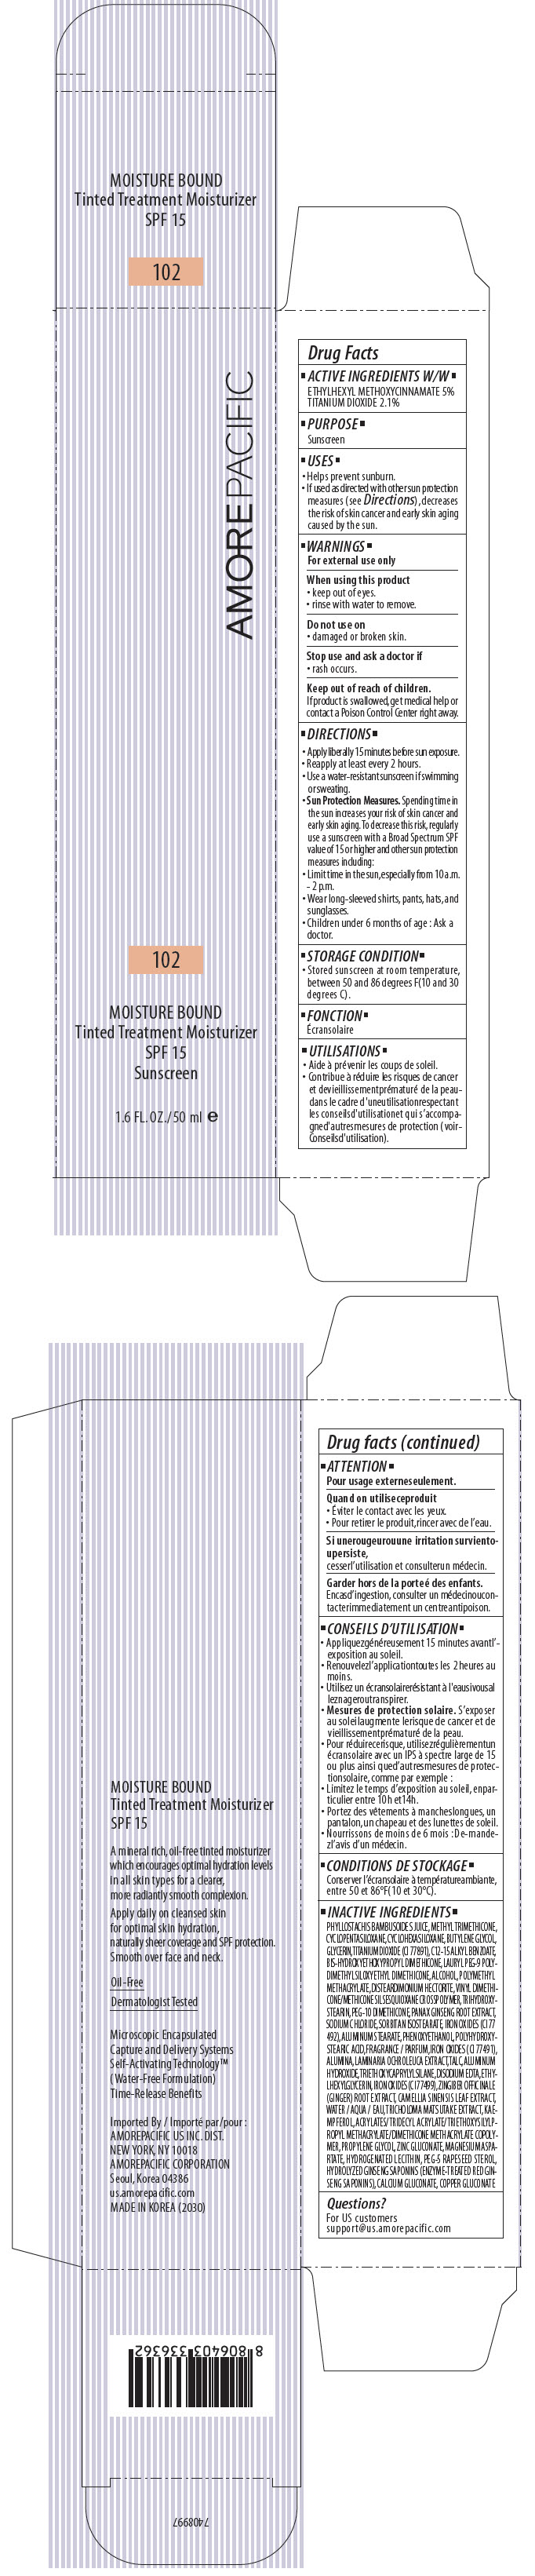 PRINCIPAL DISPLAY PANEL - 50 ml Tube Carton - 102